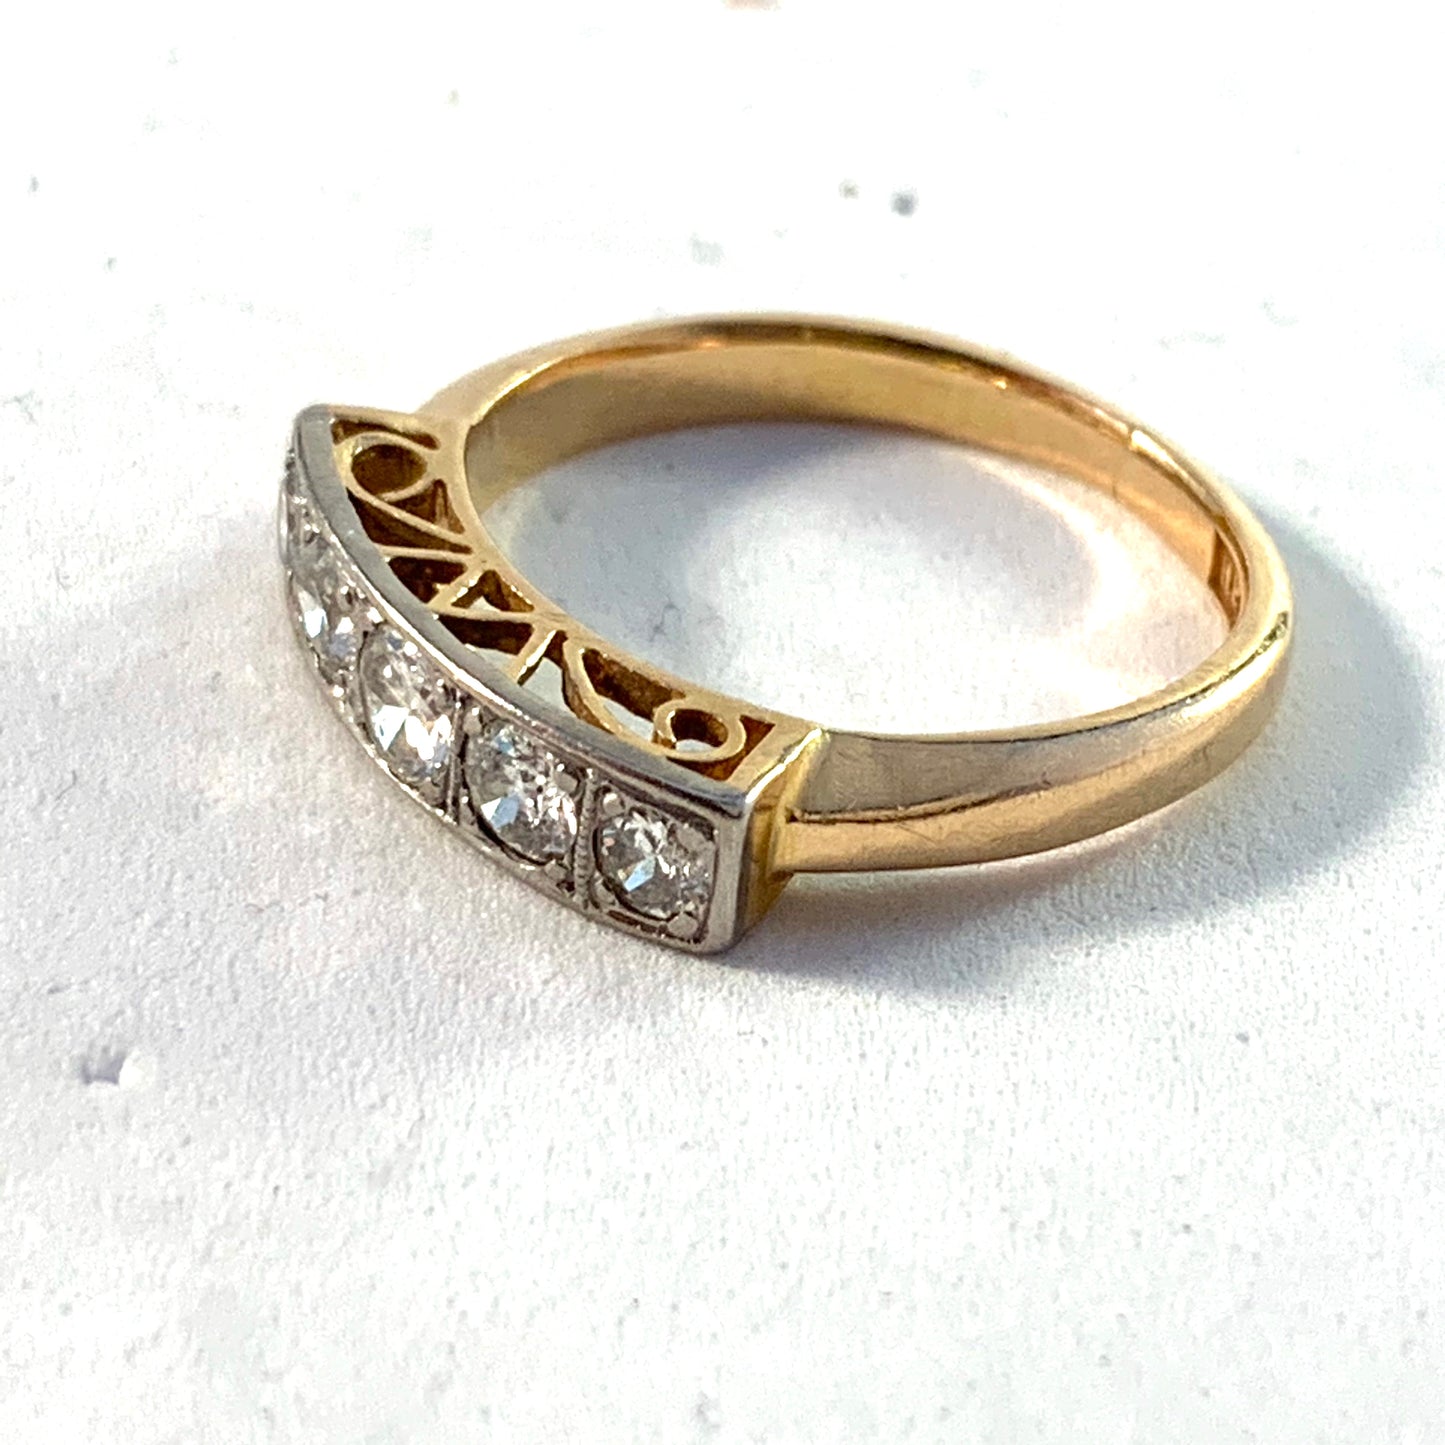 Håkanson, Sweden 1940s 18k Gold 0.83ctw Diamond Ring.